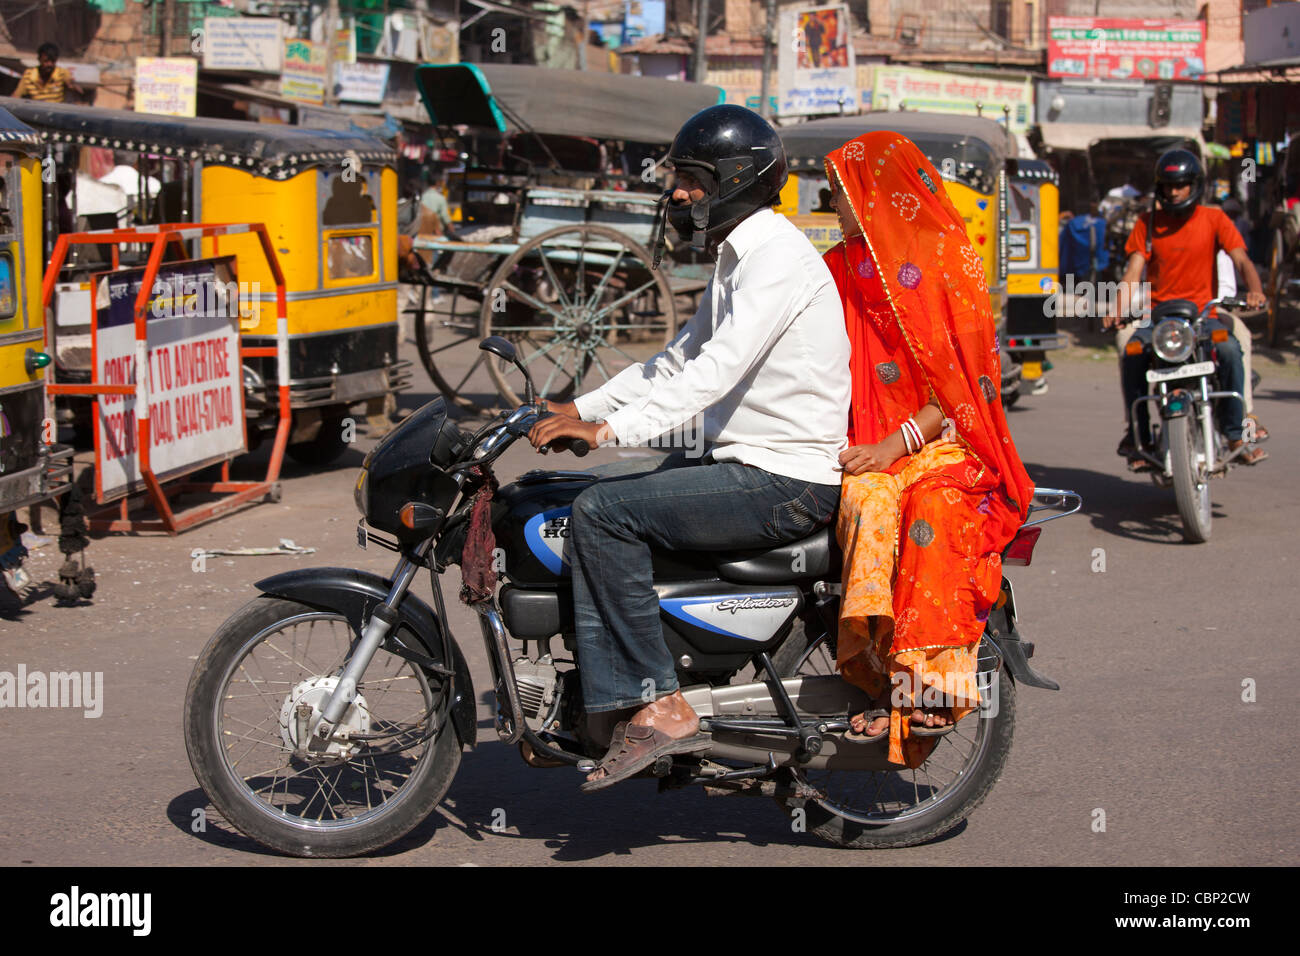 Indian couple riding motorcycle, street scene at Sardar Market at Girdikot, Jodhpur, Rajasthan, Northern India Stock Photo